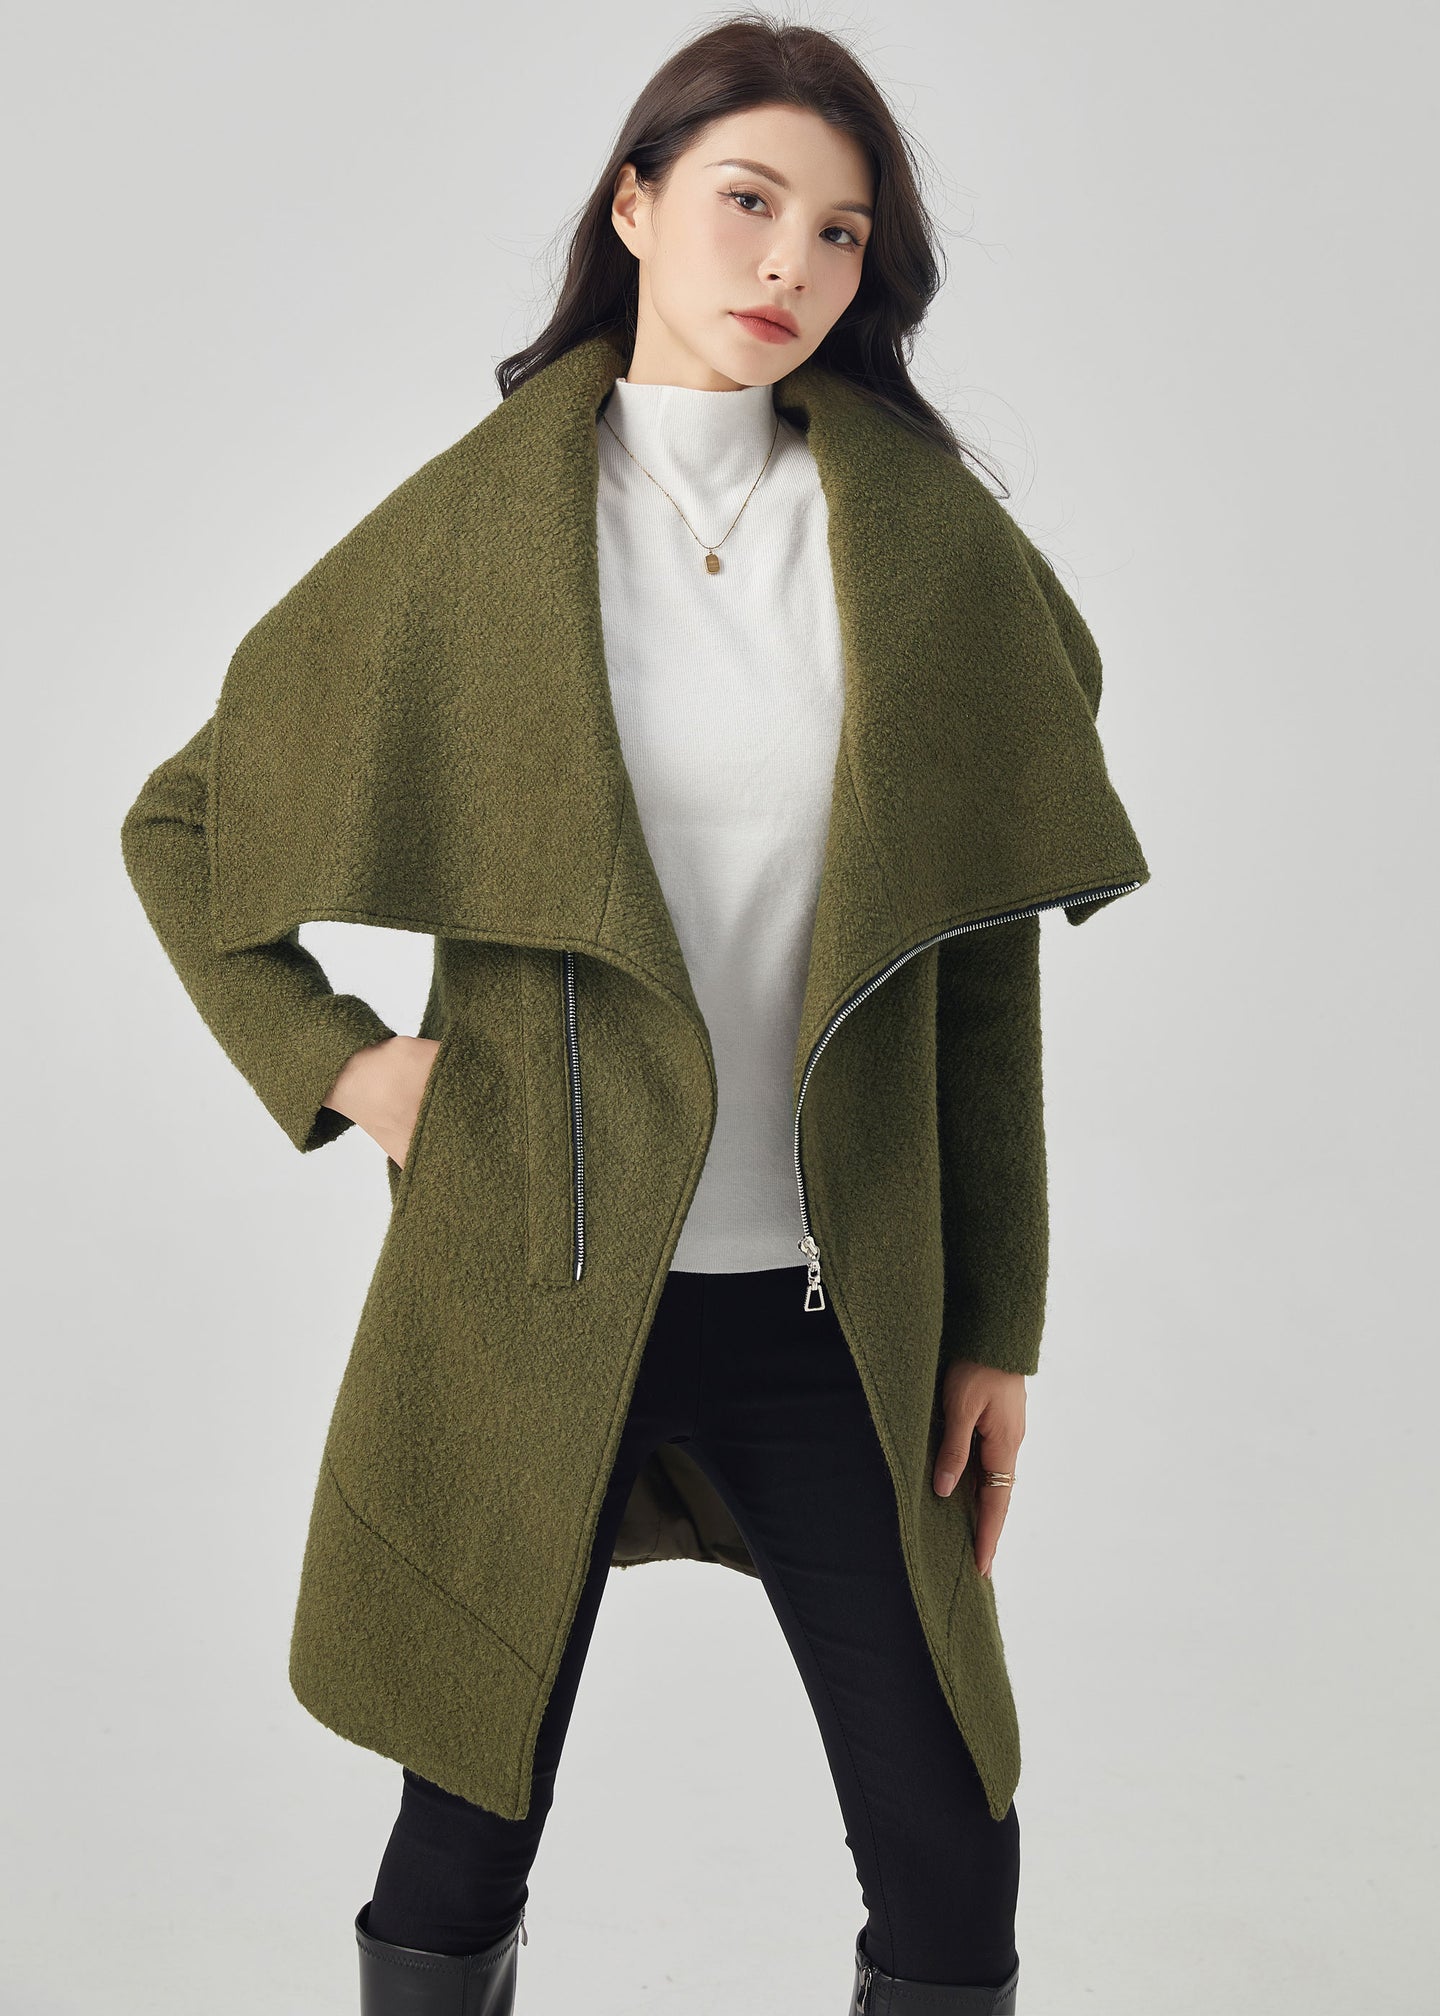 Asymmetrical Wool Coat, Winter Wool Coat C3561